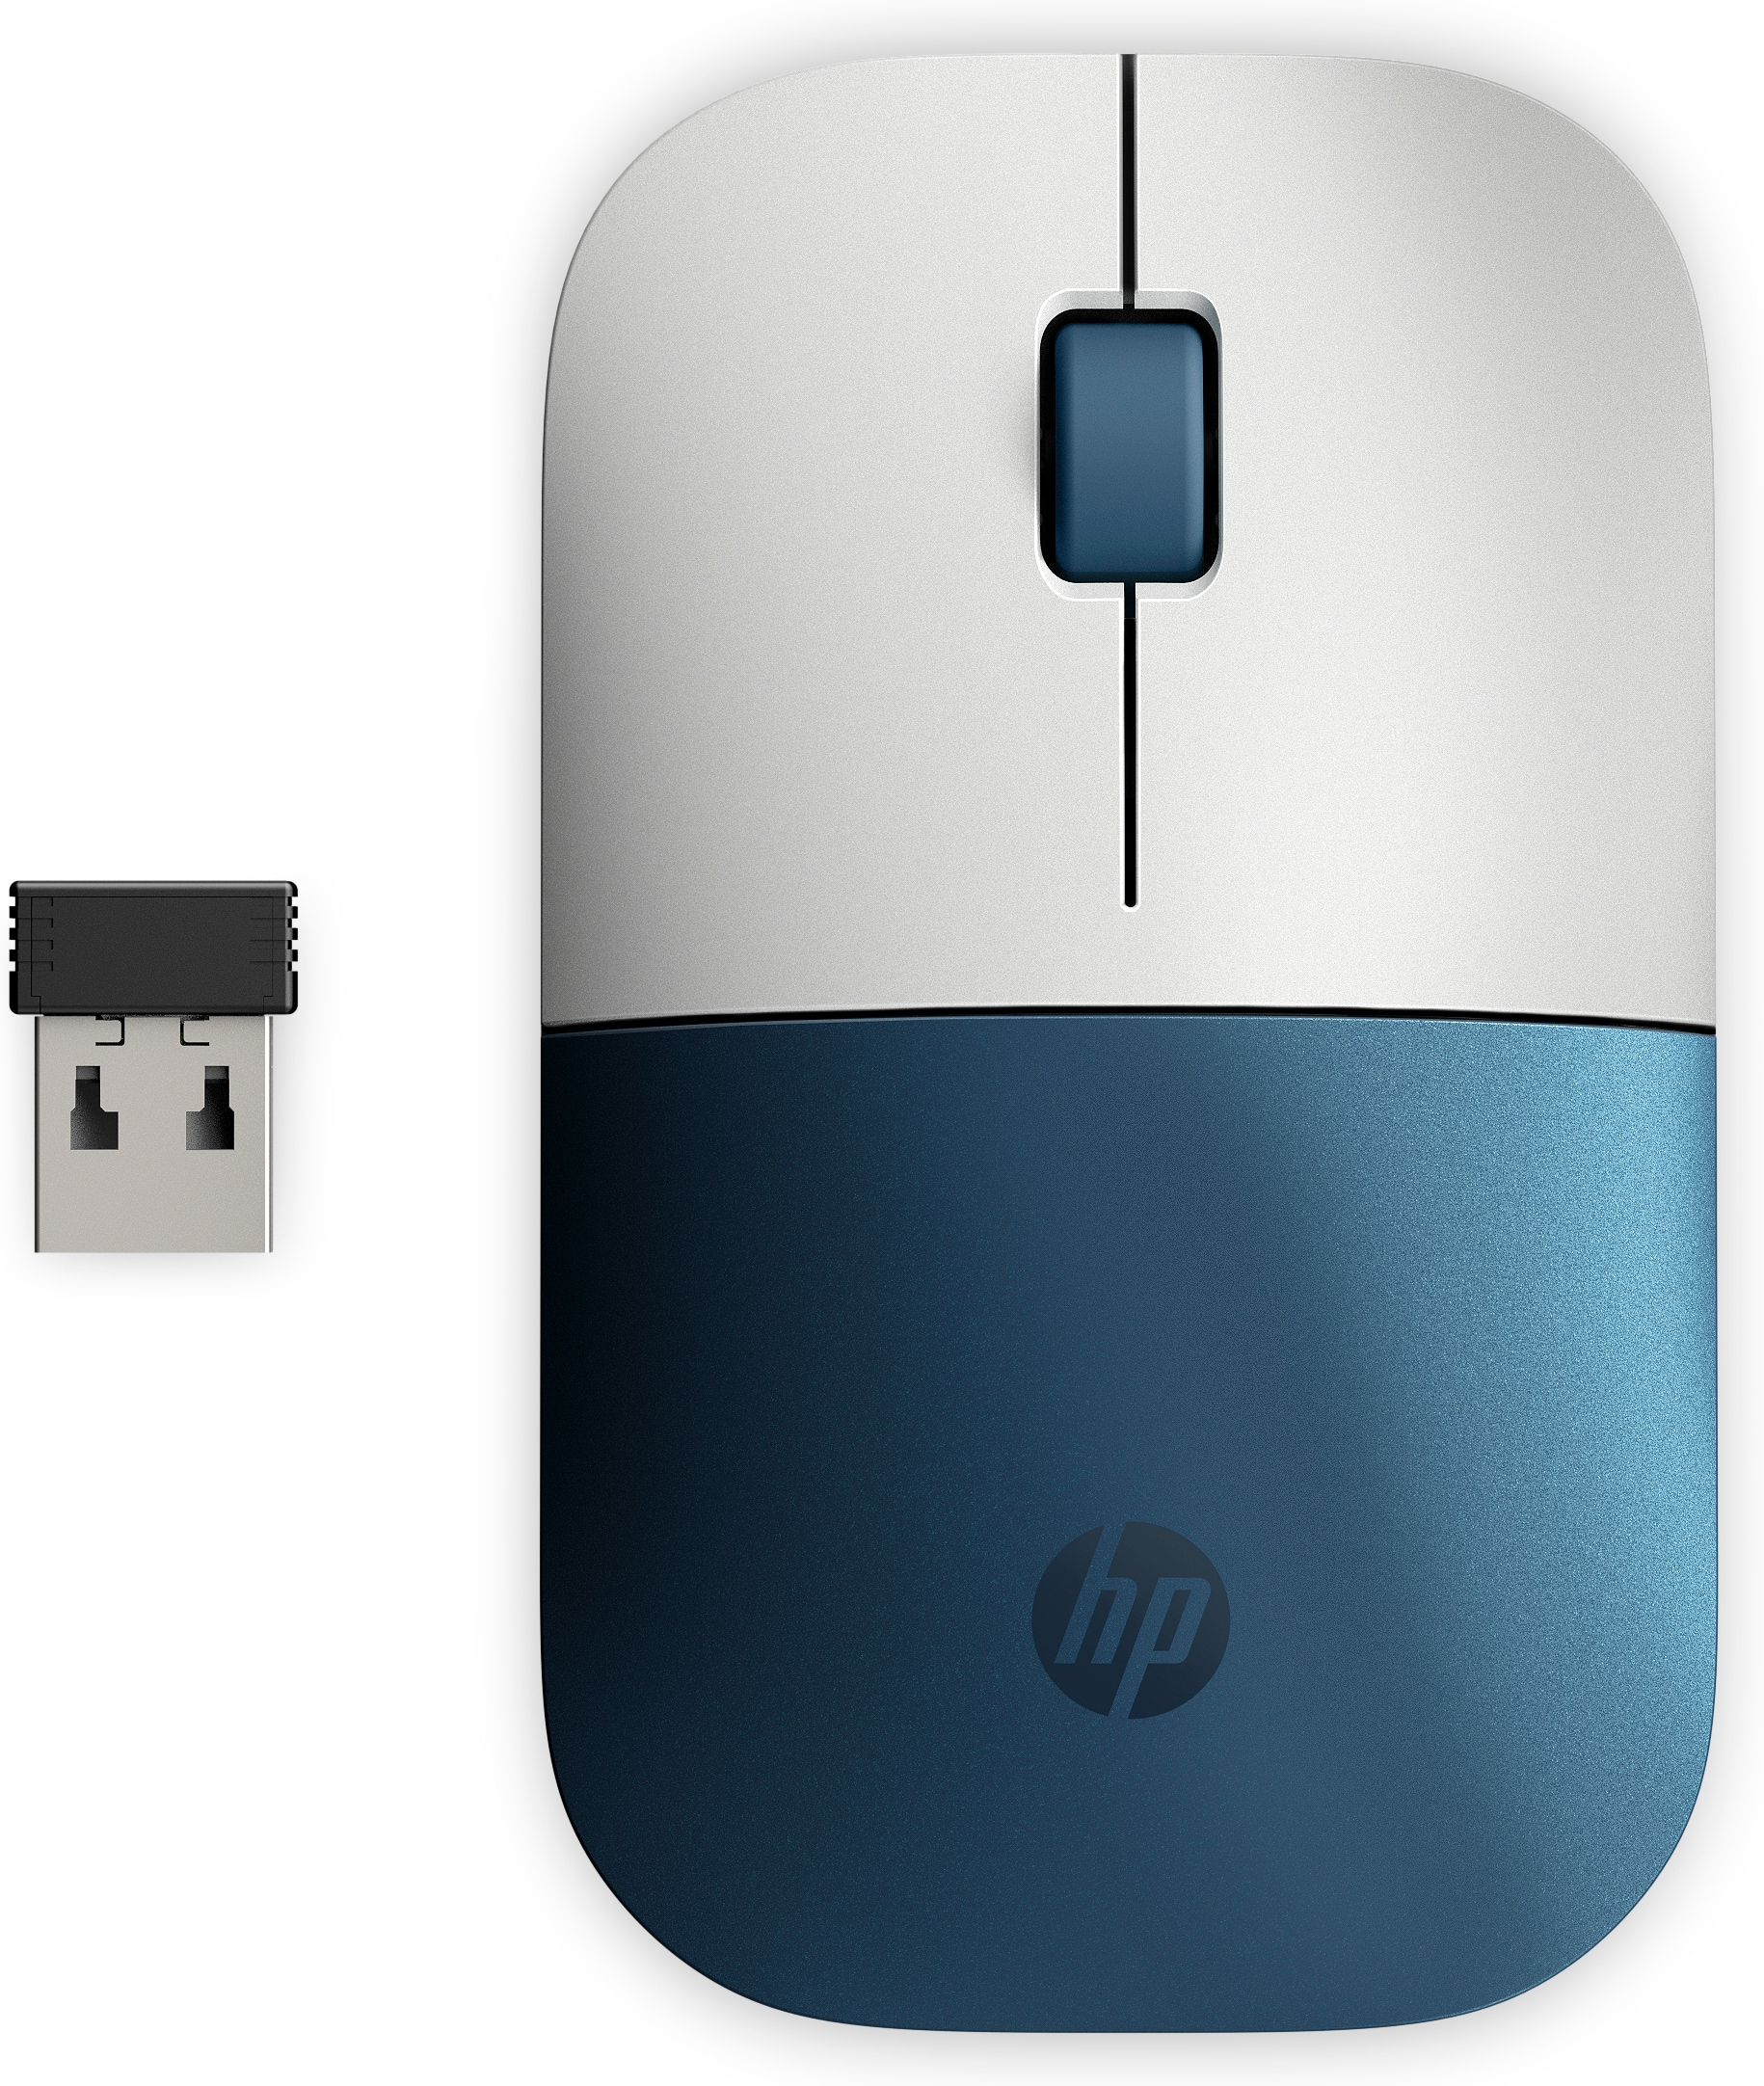 HP Z3700 trådlös mus i forest teal